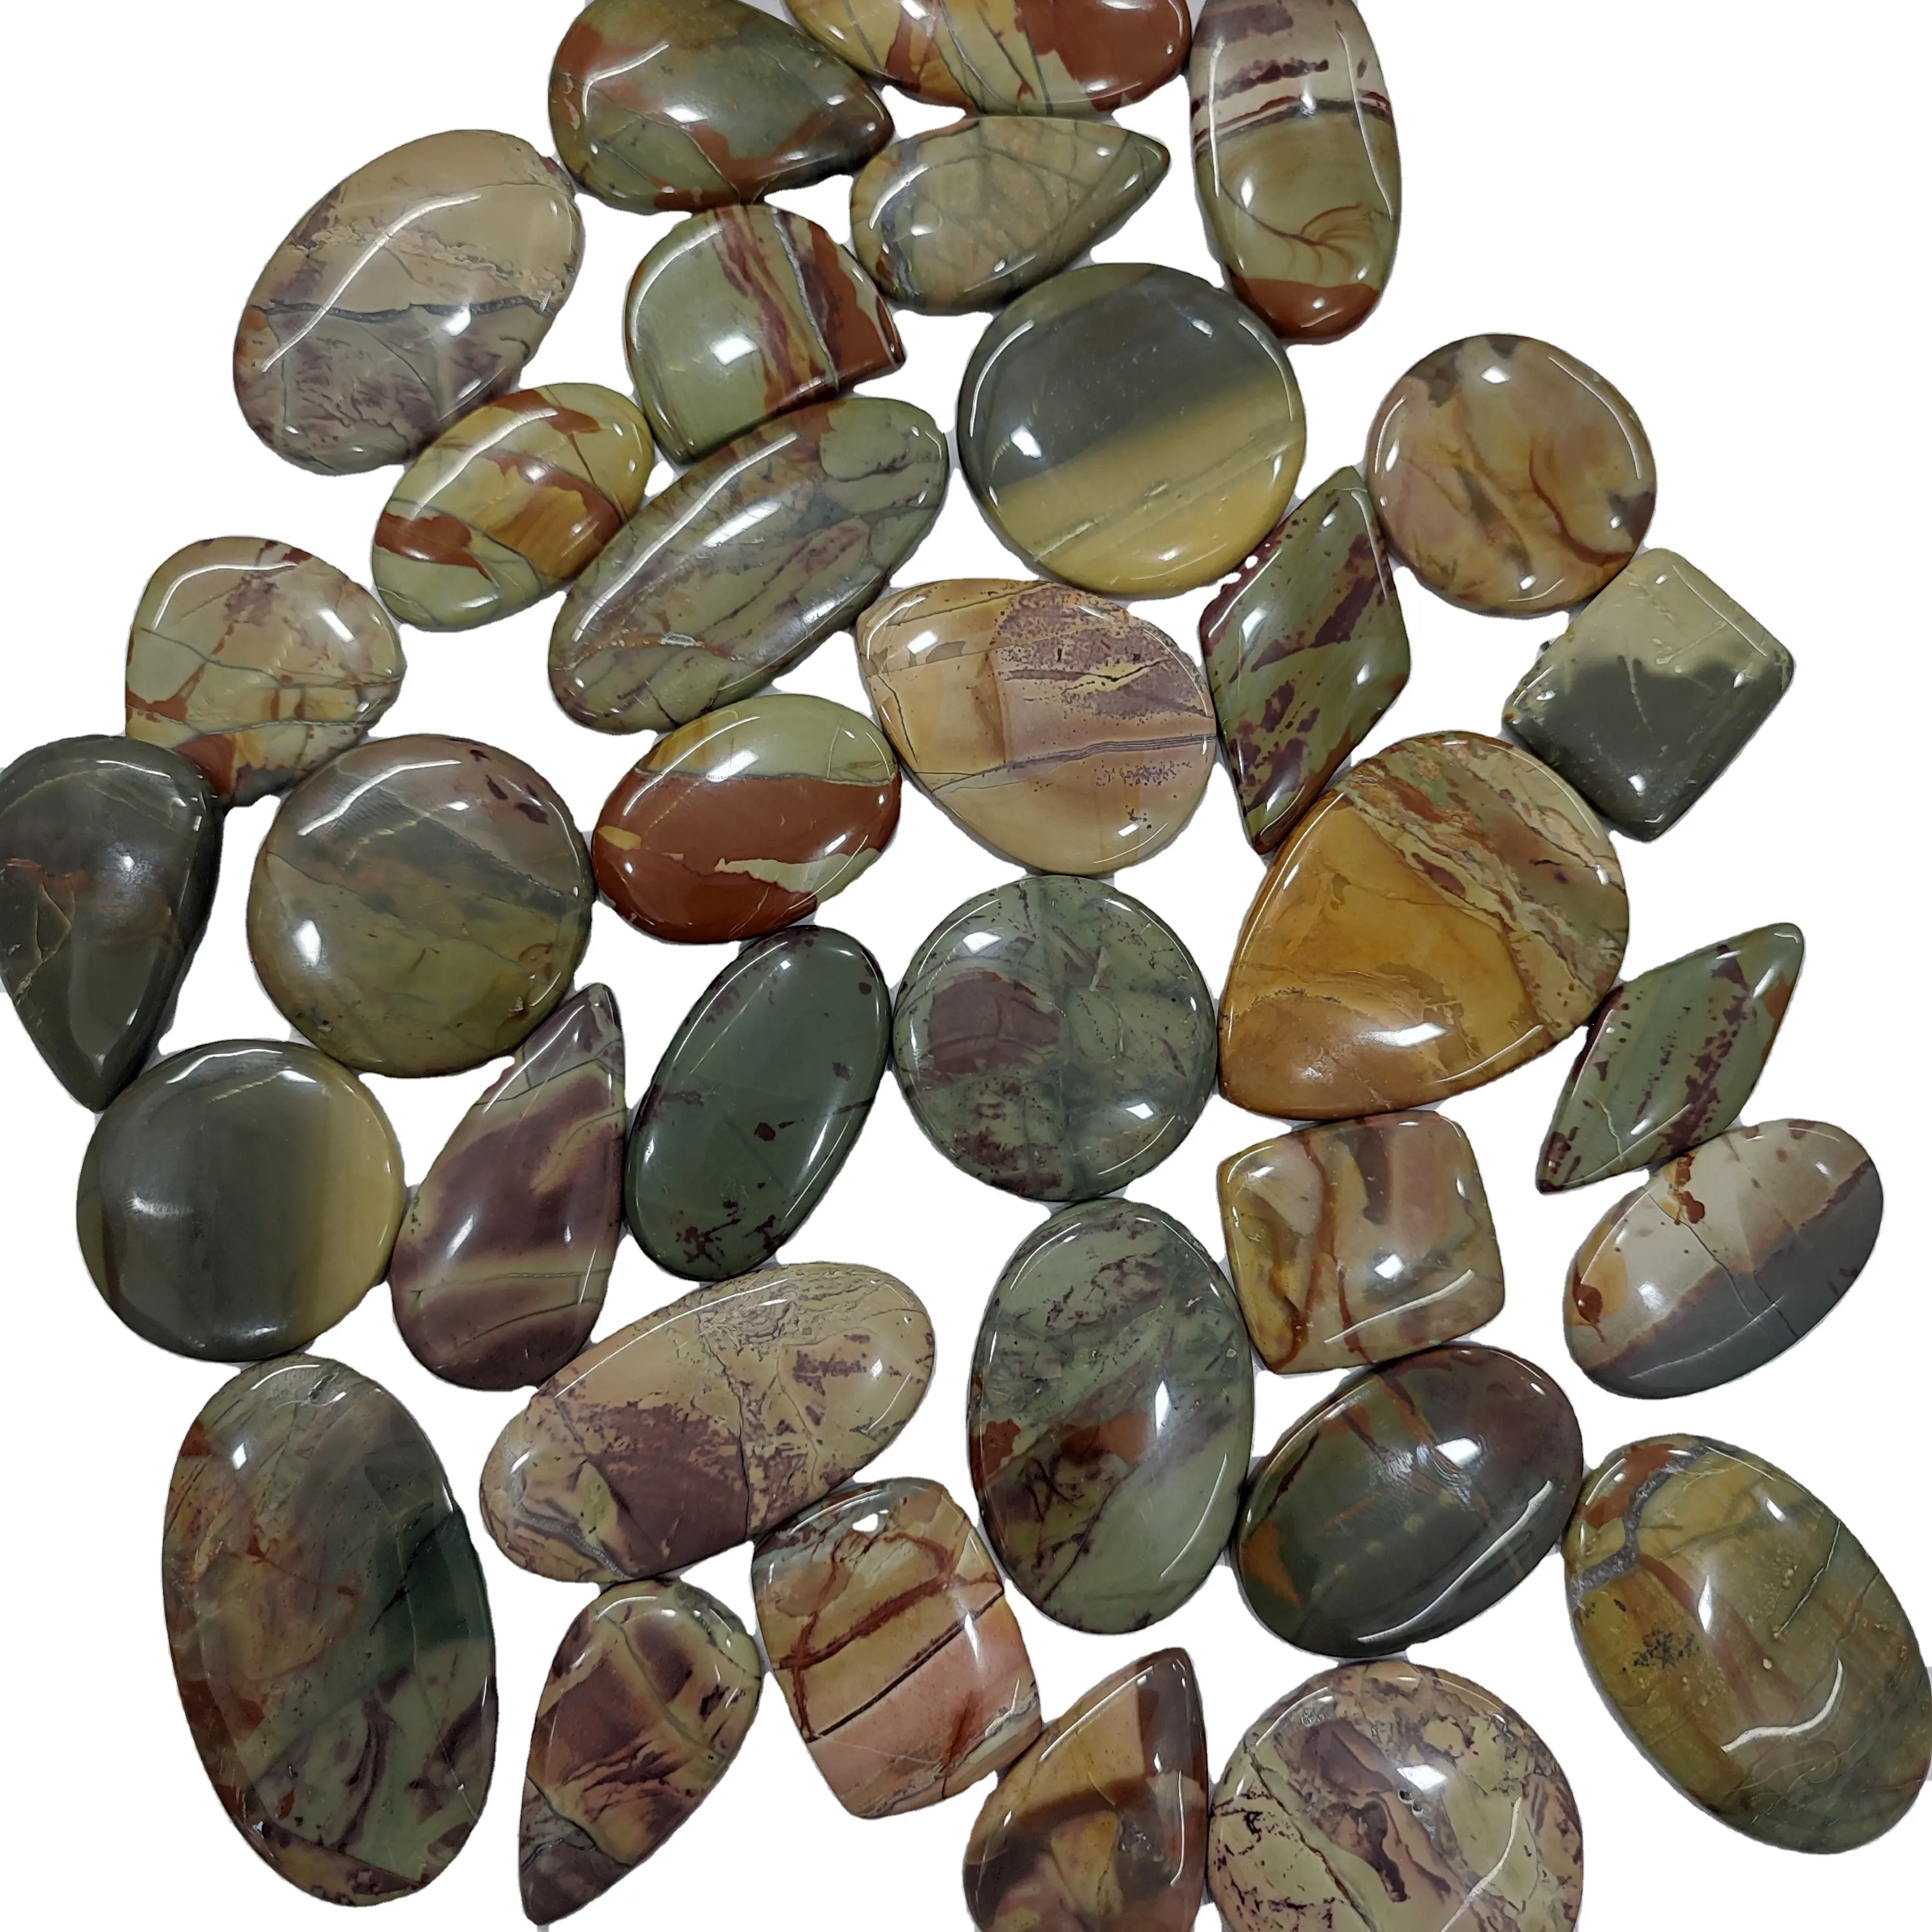 100% полихромный драгоценный камень из яшмы высшего качества, высший сорт, драгоценный камень для ювелирных изделий, доступный оптом в Индии